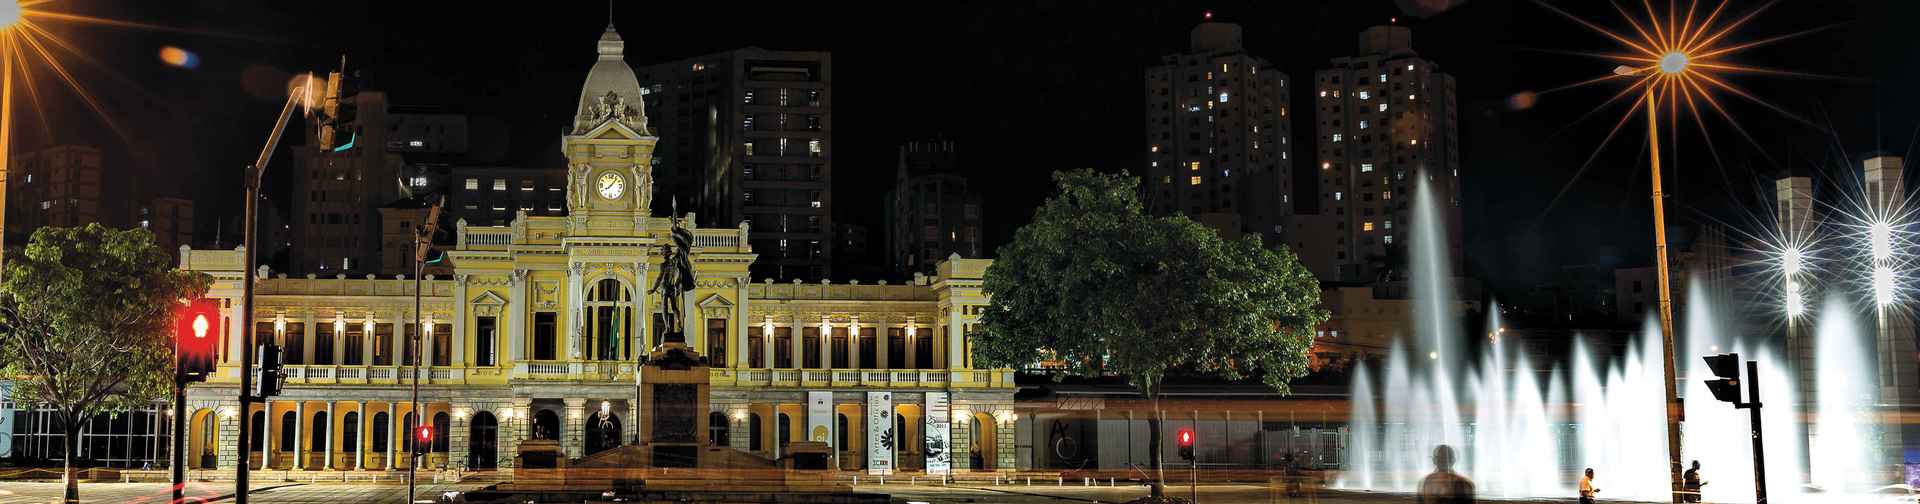 Praça da Estação: “livro aberto” para compreender a história de Belo Horizonte